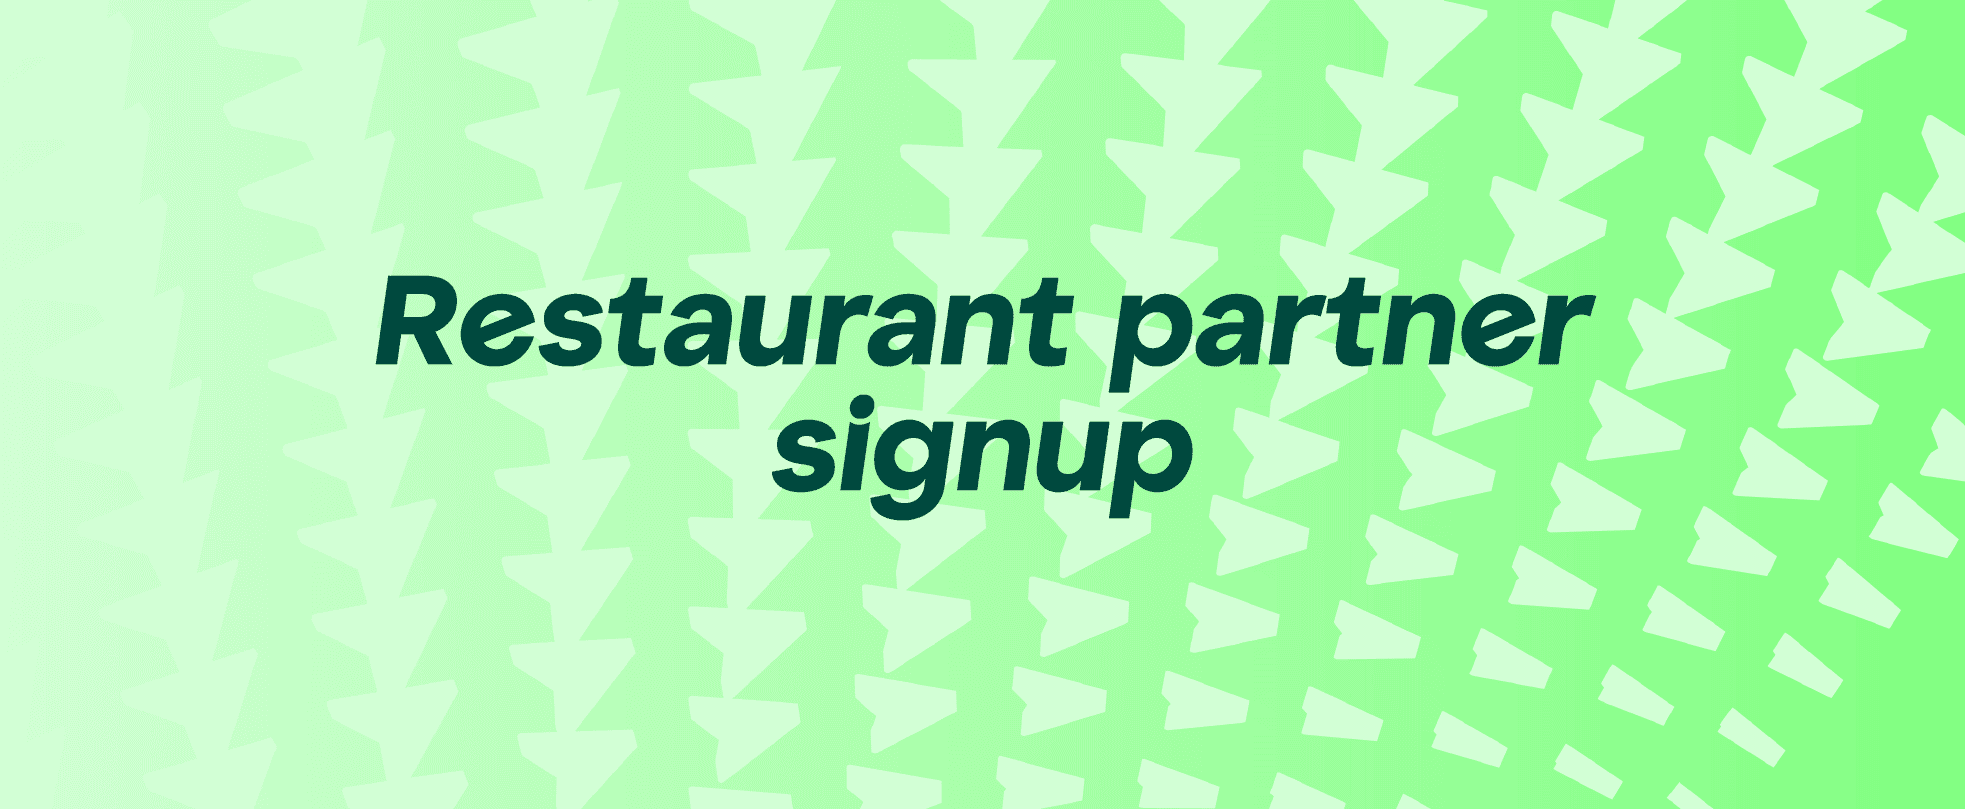 Restaurant partner signup